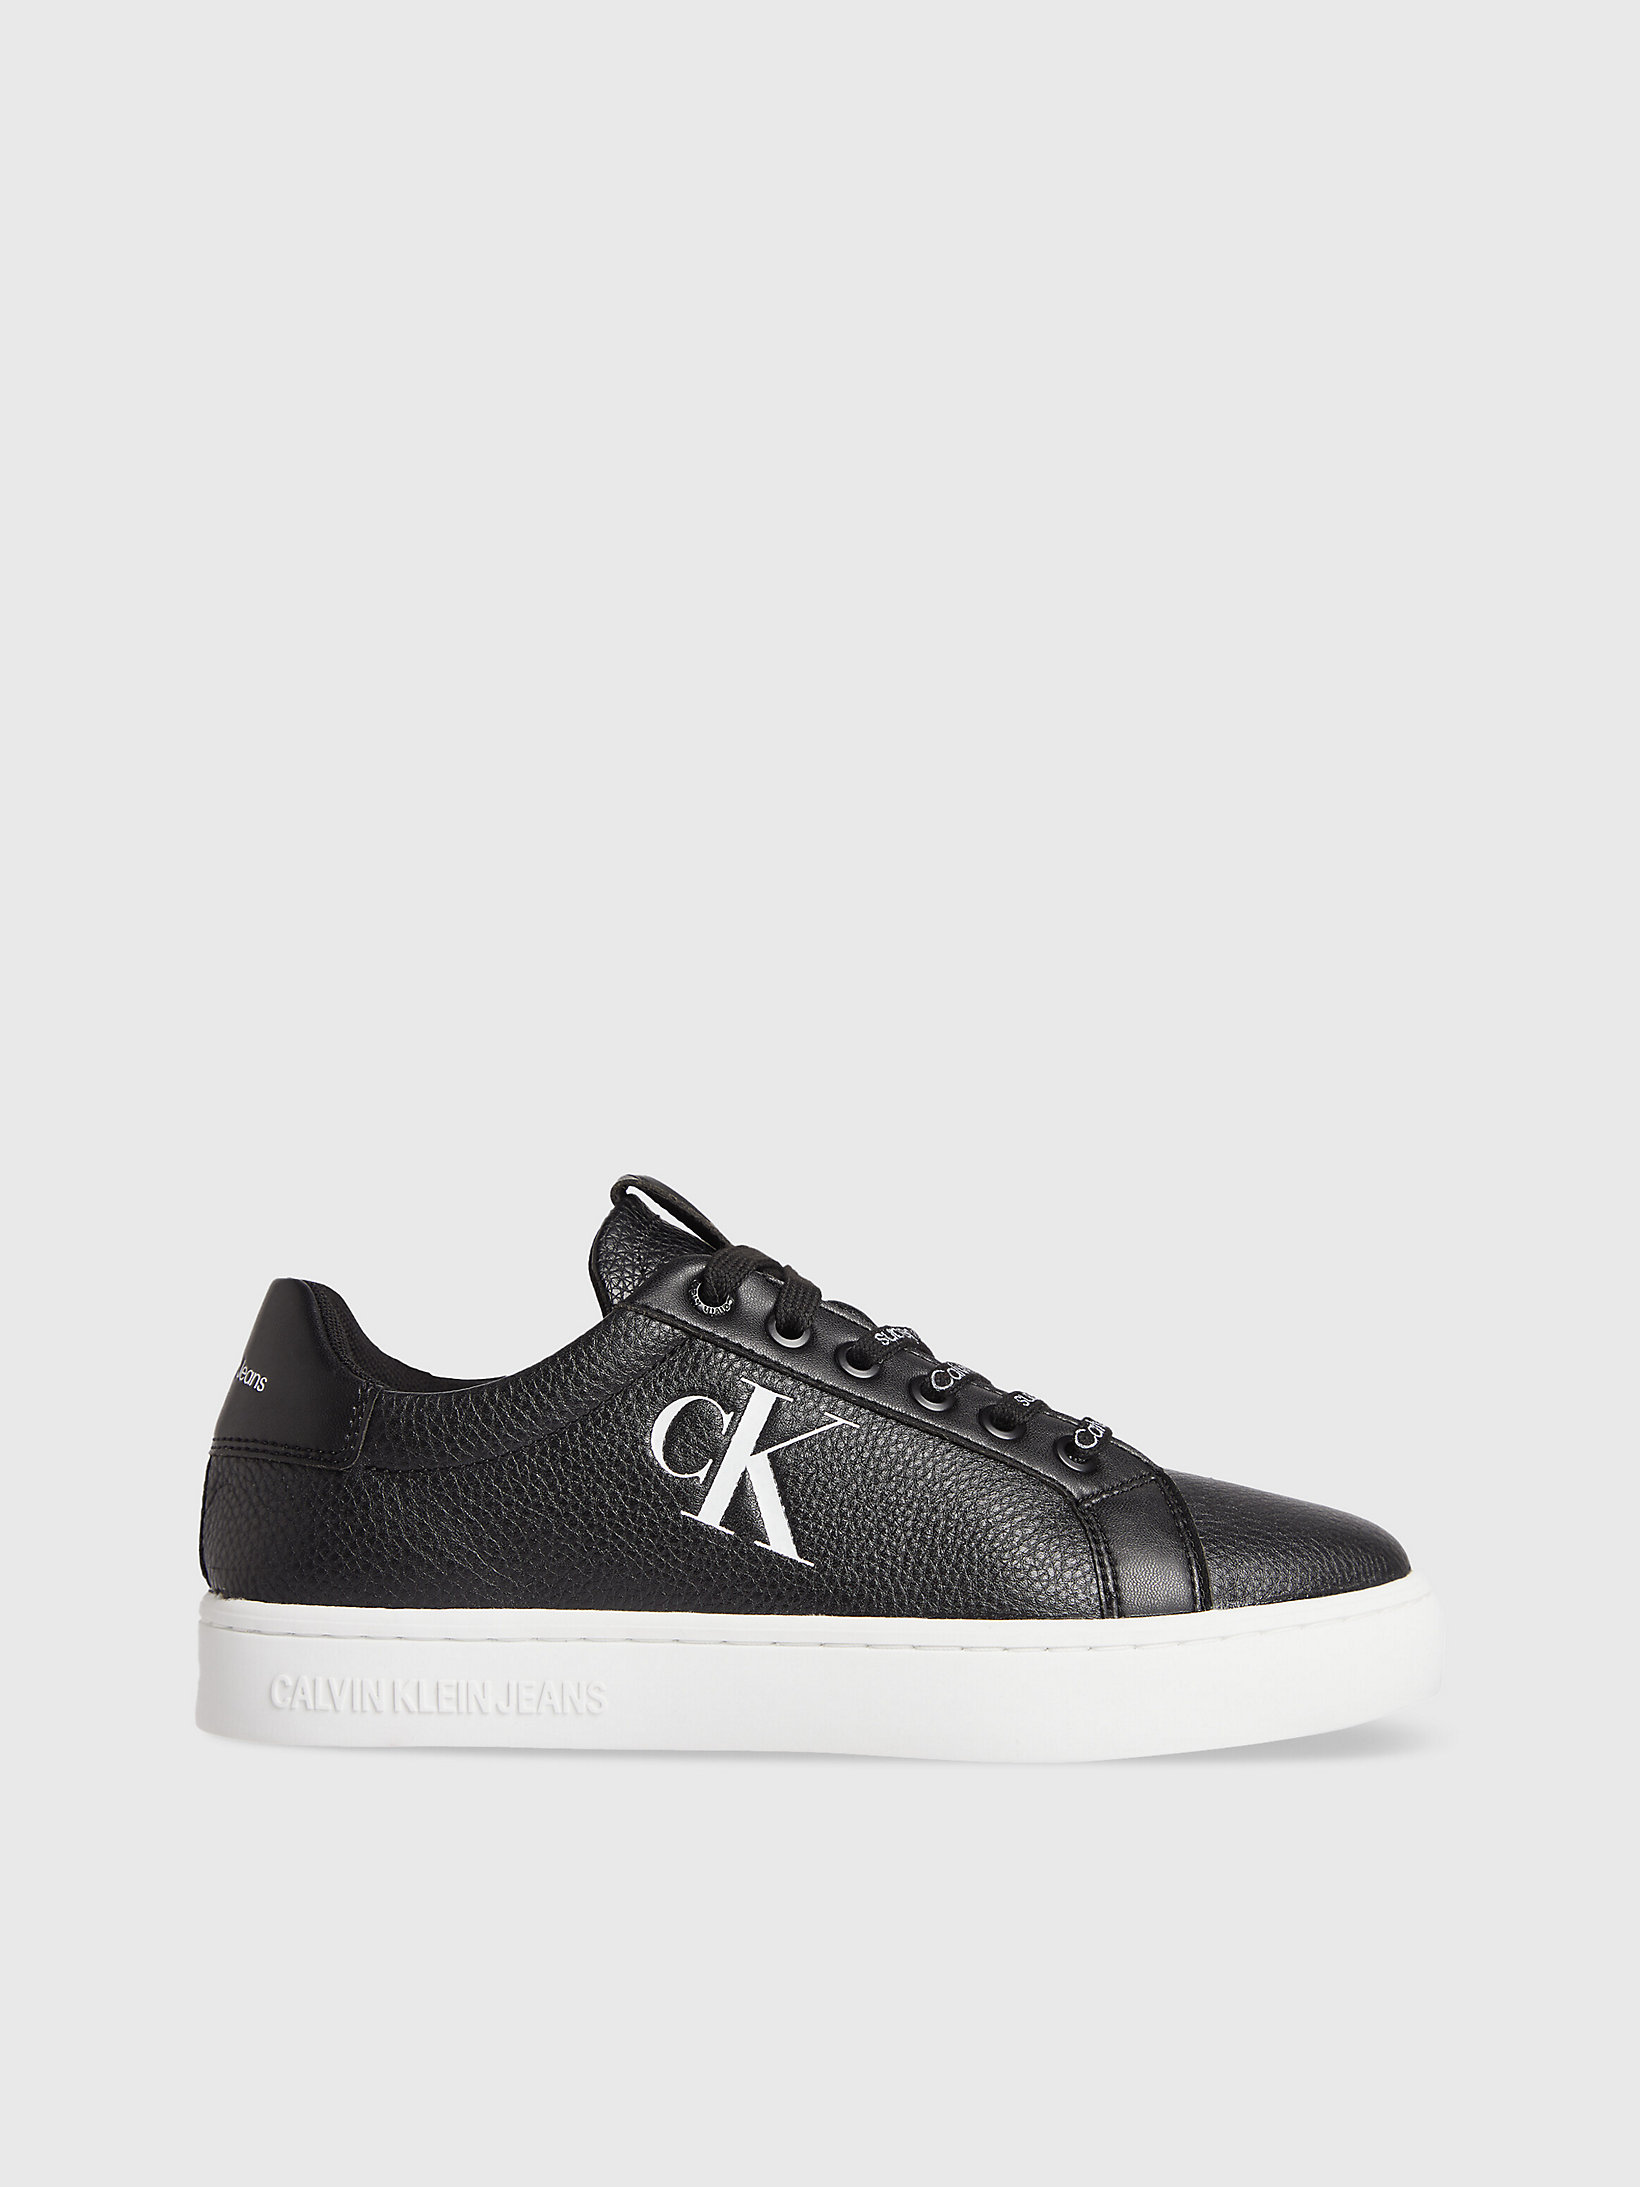 Black/white Leder-Sneakers undefined Damen Calvin Klein